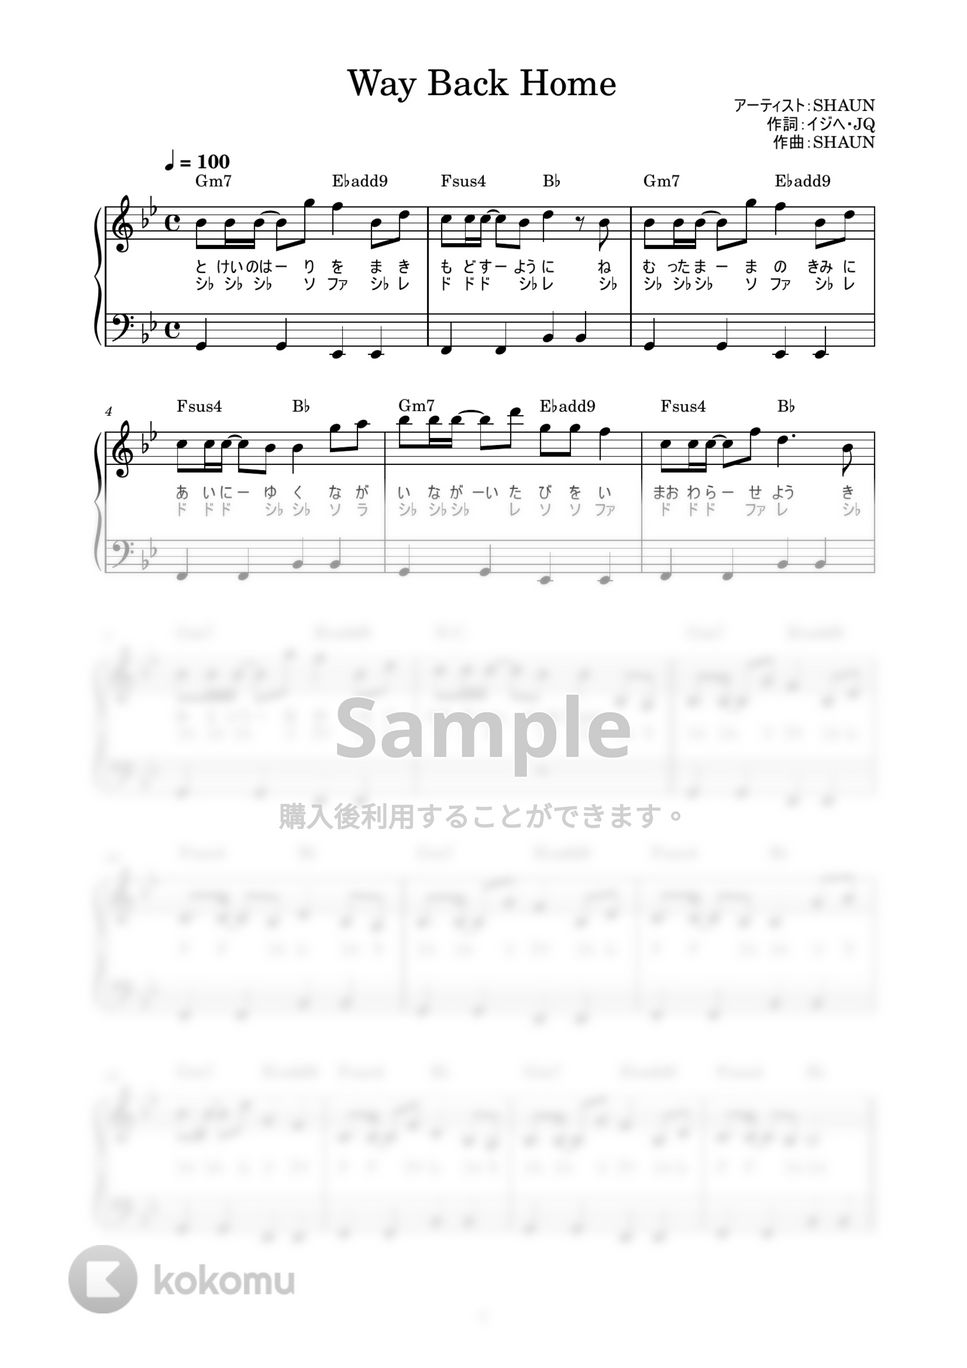 SHAUN - Way Back Home (かんたん / 歌詞付き / ドレミ付き / 初心者) by piano.tokyo